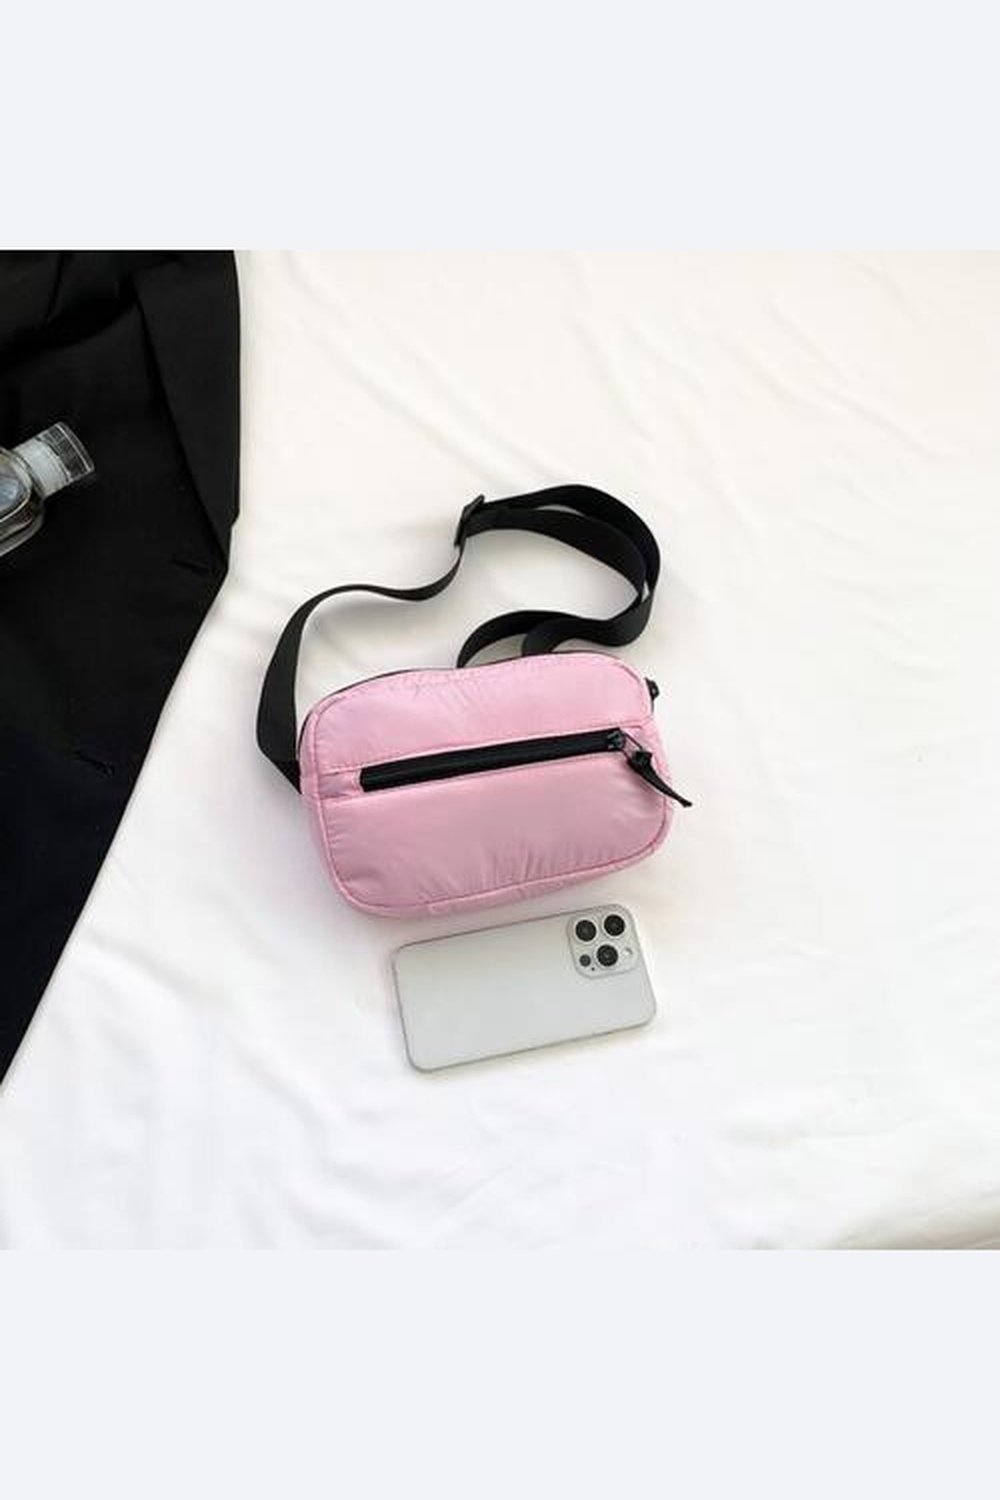 Adjustable Strap Sling Bag - Handbag - FITGGINS